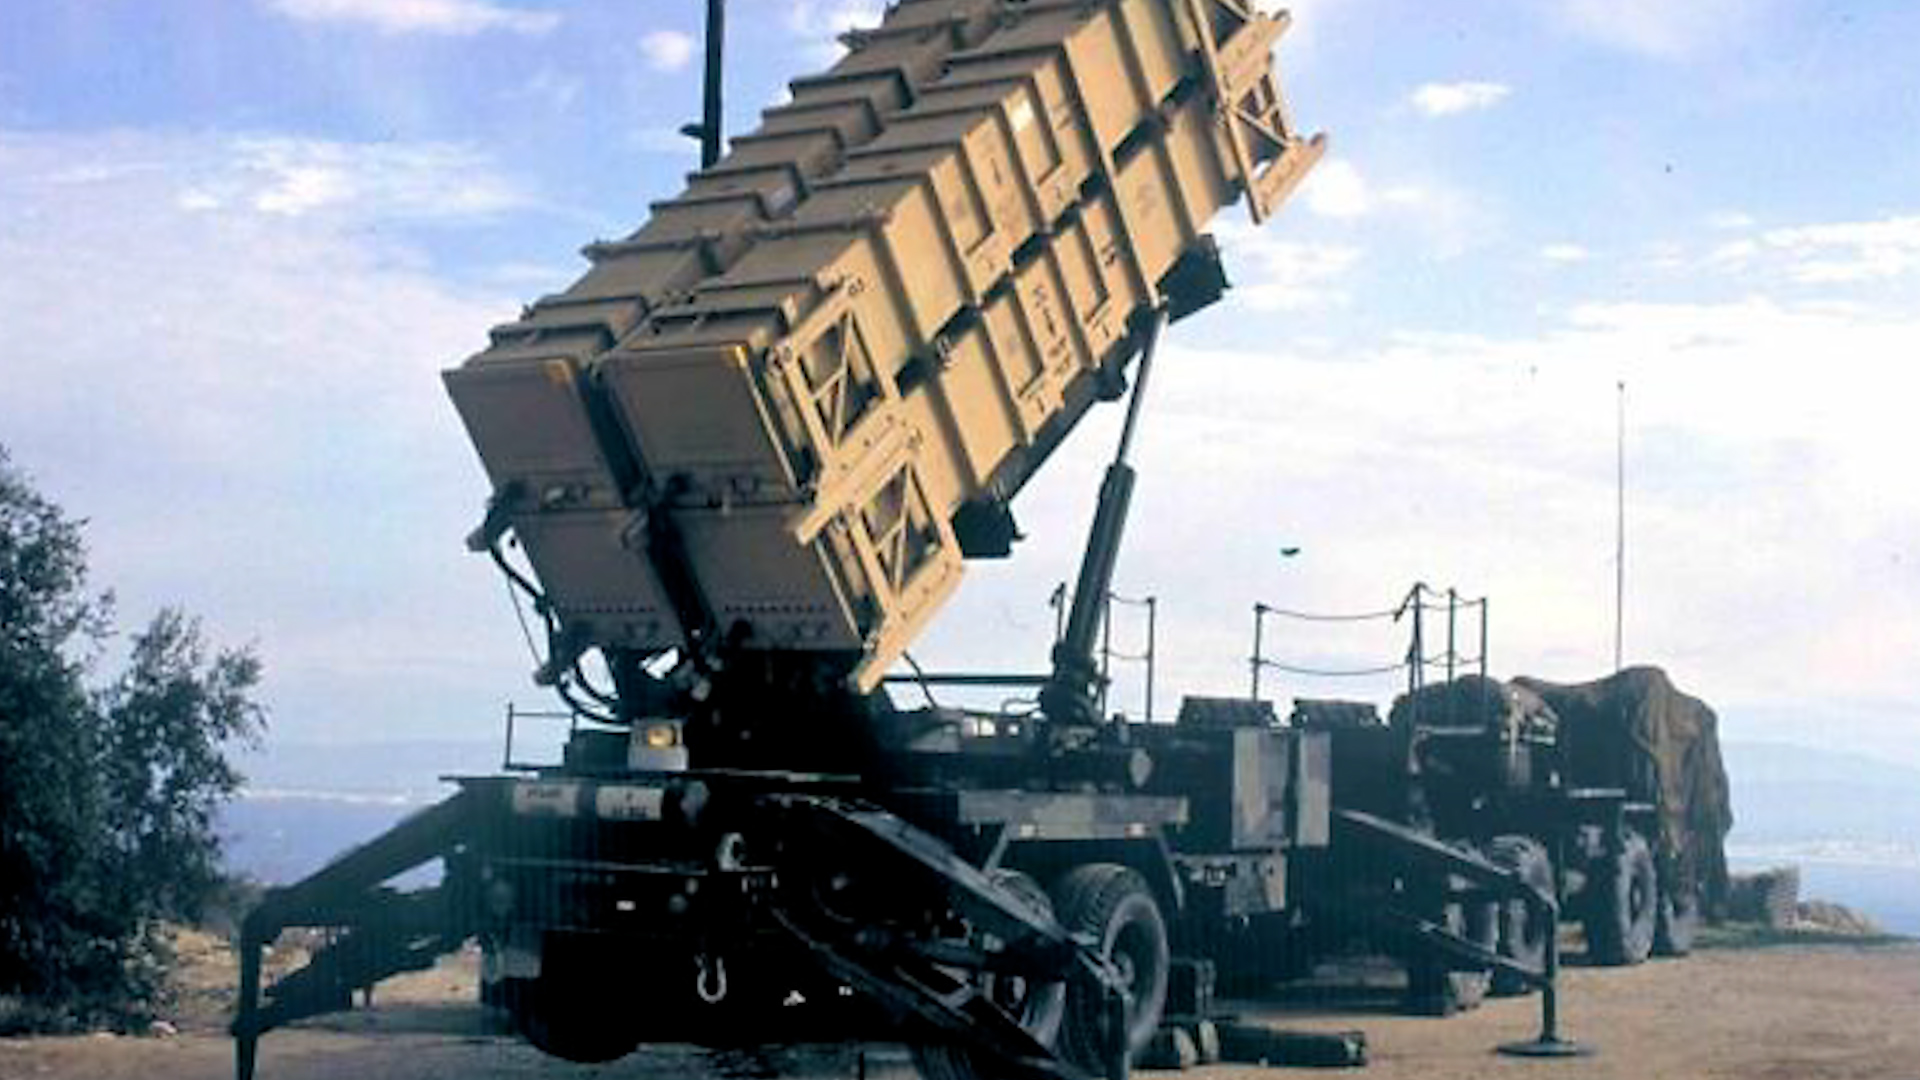 Một hệ thống phòng thủ tên lửa Patriot của Mỹ được triển khai ở Israel để đáp trả một loạt cuộc tấn công bằng tên lửa Scud của Iraq trong Chiến tranh vùng Vịnh lần thứ nhất vào năm 1991